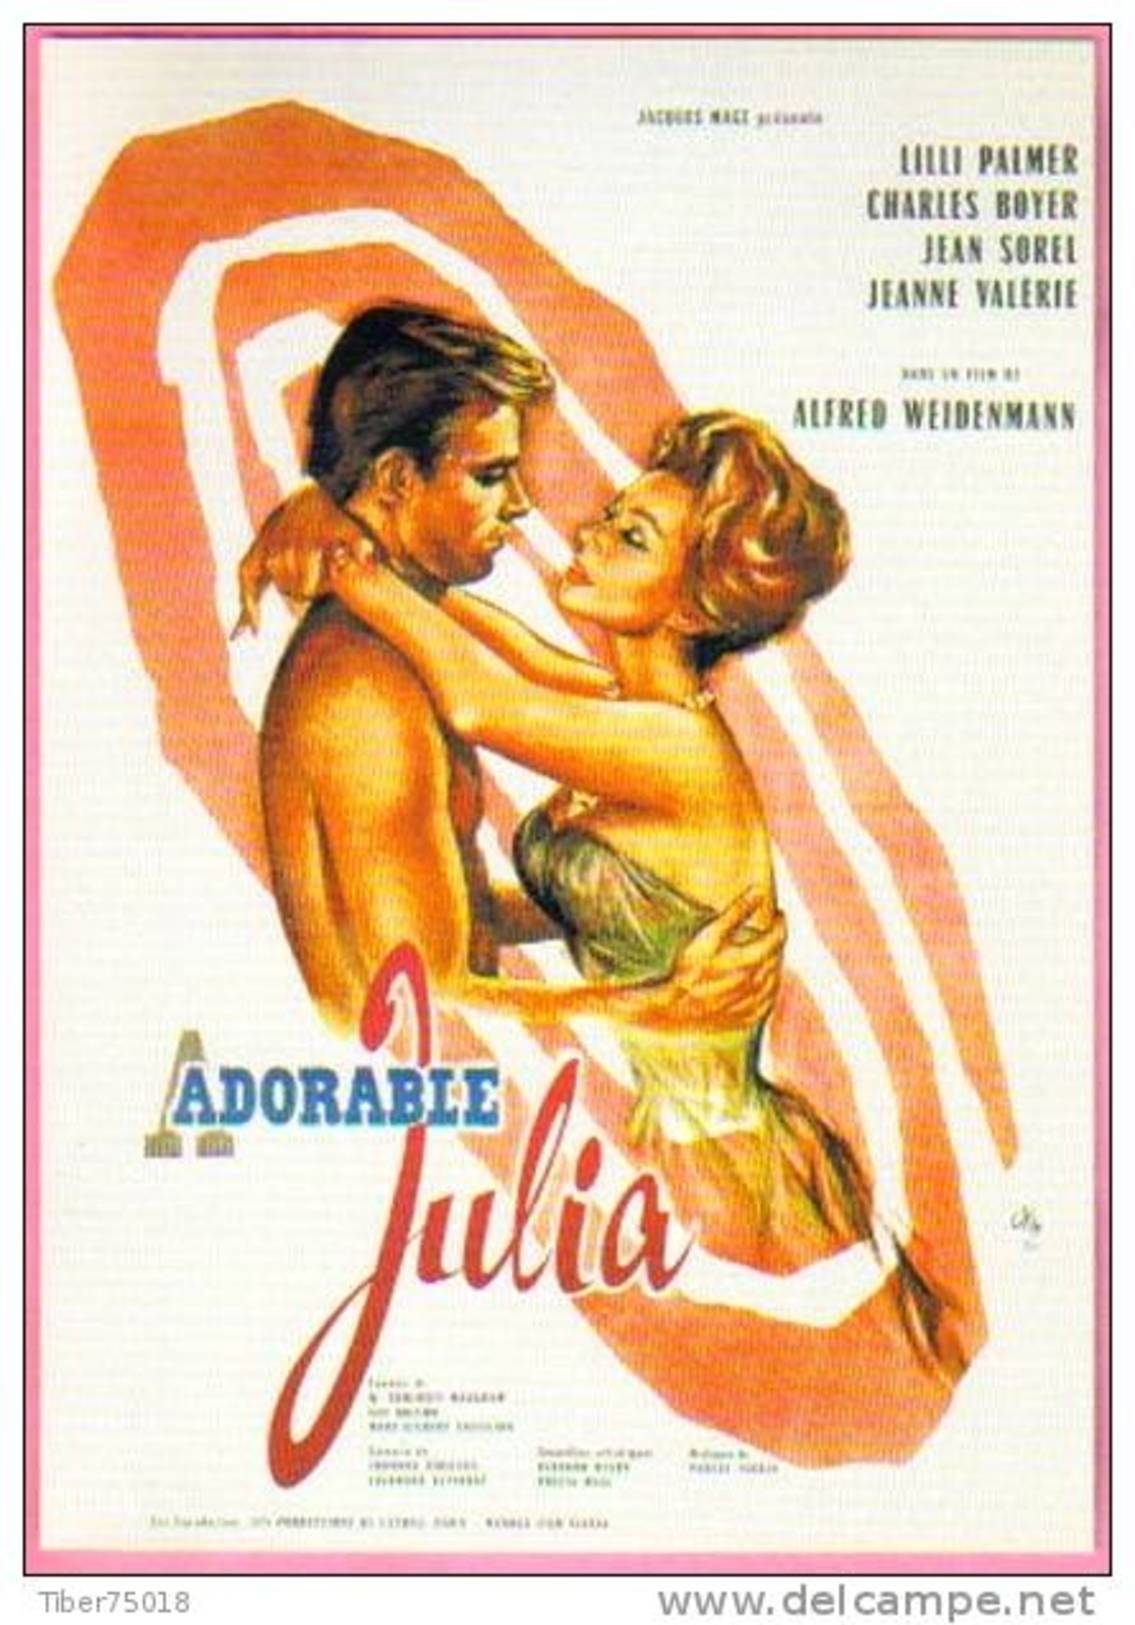 Carte Postale : Adorable Julia (Lili Palmer - Charles Boyer - Jean Sorel) - Illustration Okley (cinéma Film Affiche) - Posters On Cards